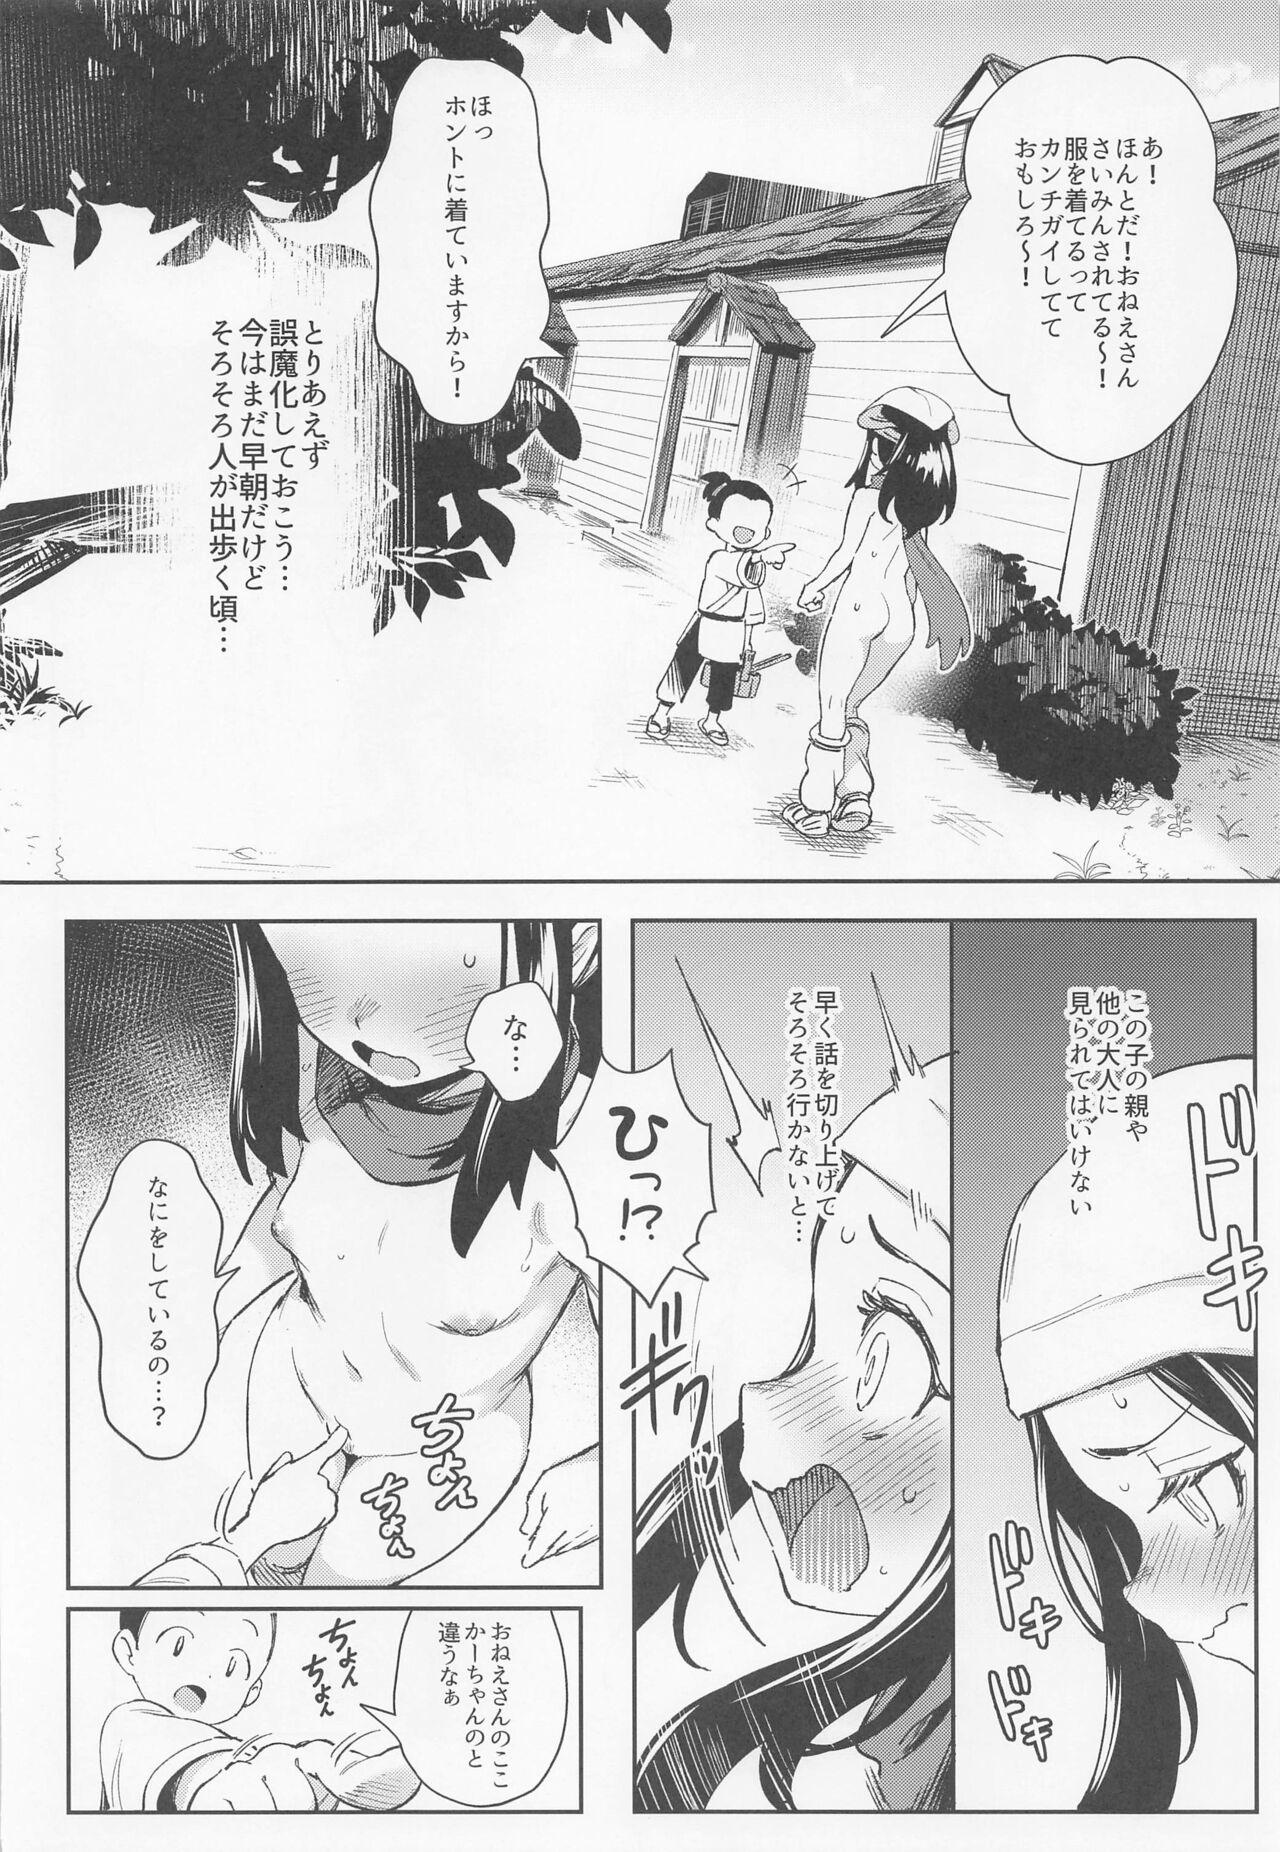 Hard onnanokotachinoinishienoboken - Pokemon | pocket monsters HD - Page 10